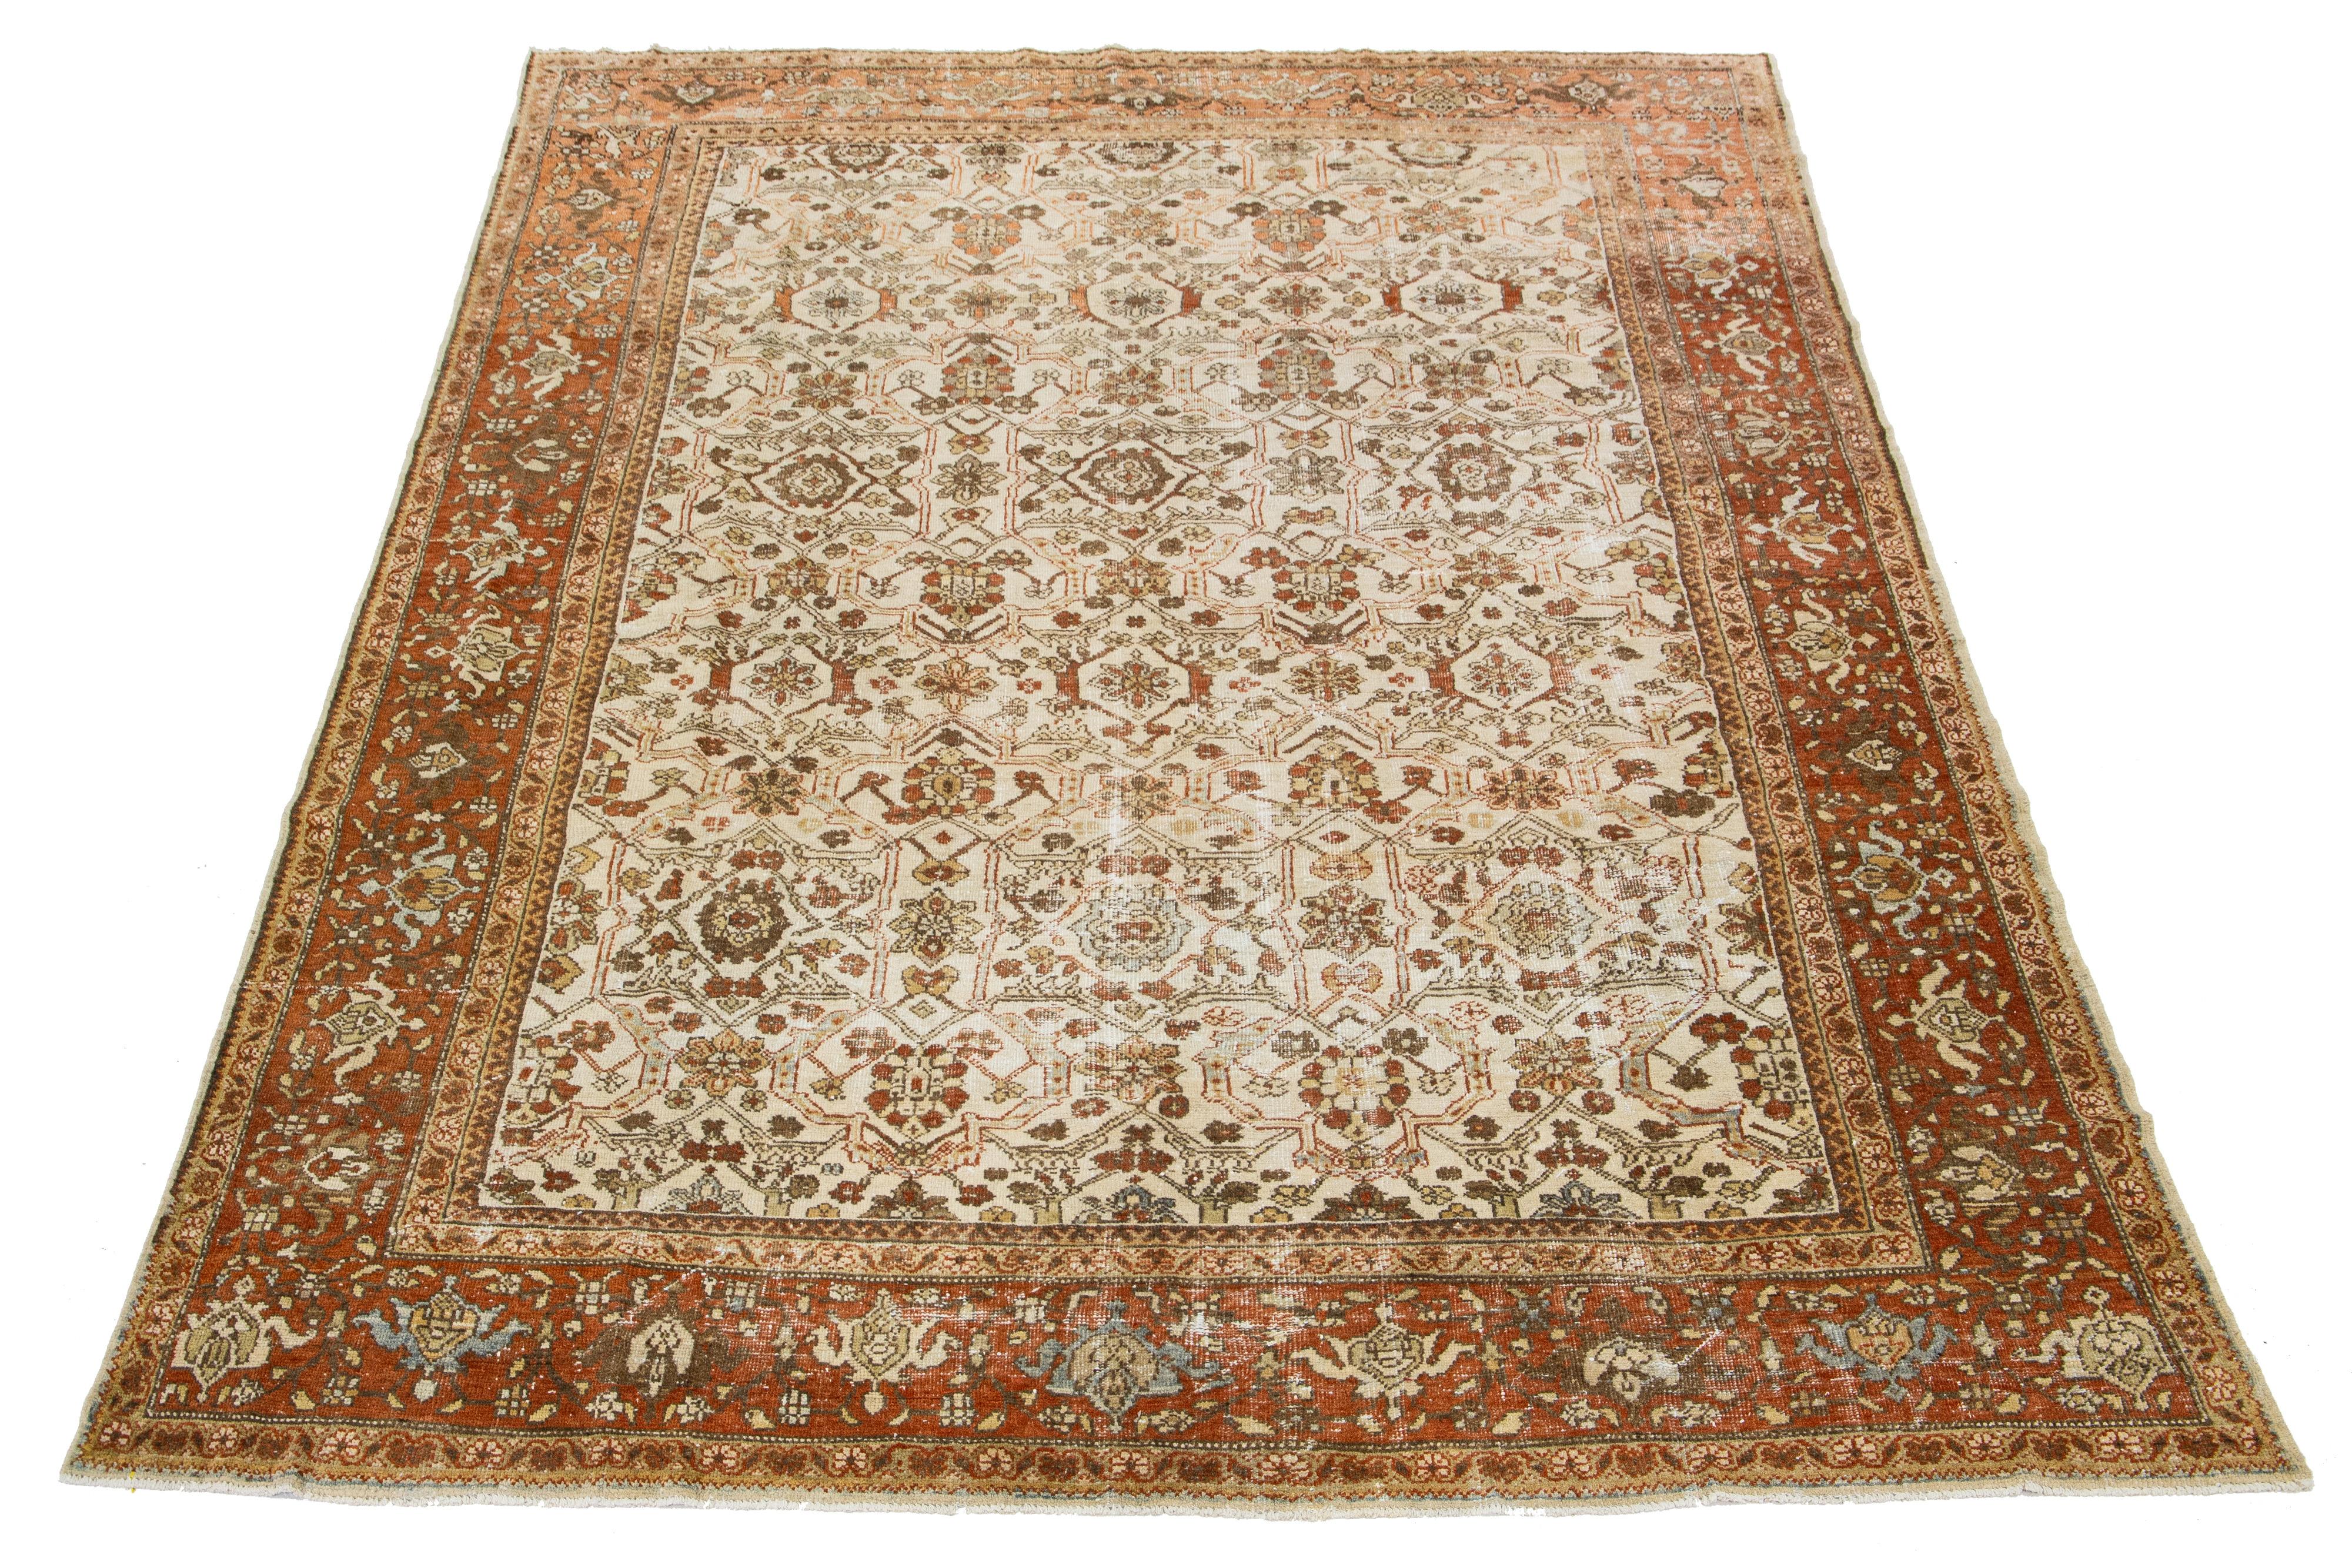 Magnifique tapis vintage en laine nouée à la main Mahal avec un champ de couleur beige. Ce tapis persan présente un motif floral classique rouille et marron.

Ce tapis mesure 8'7